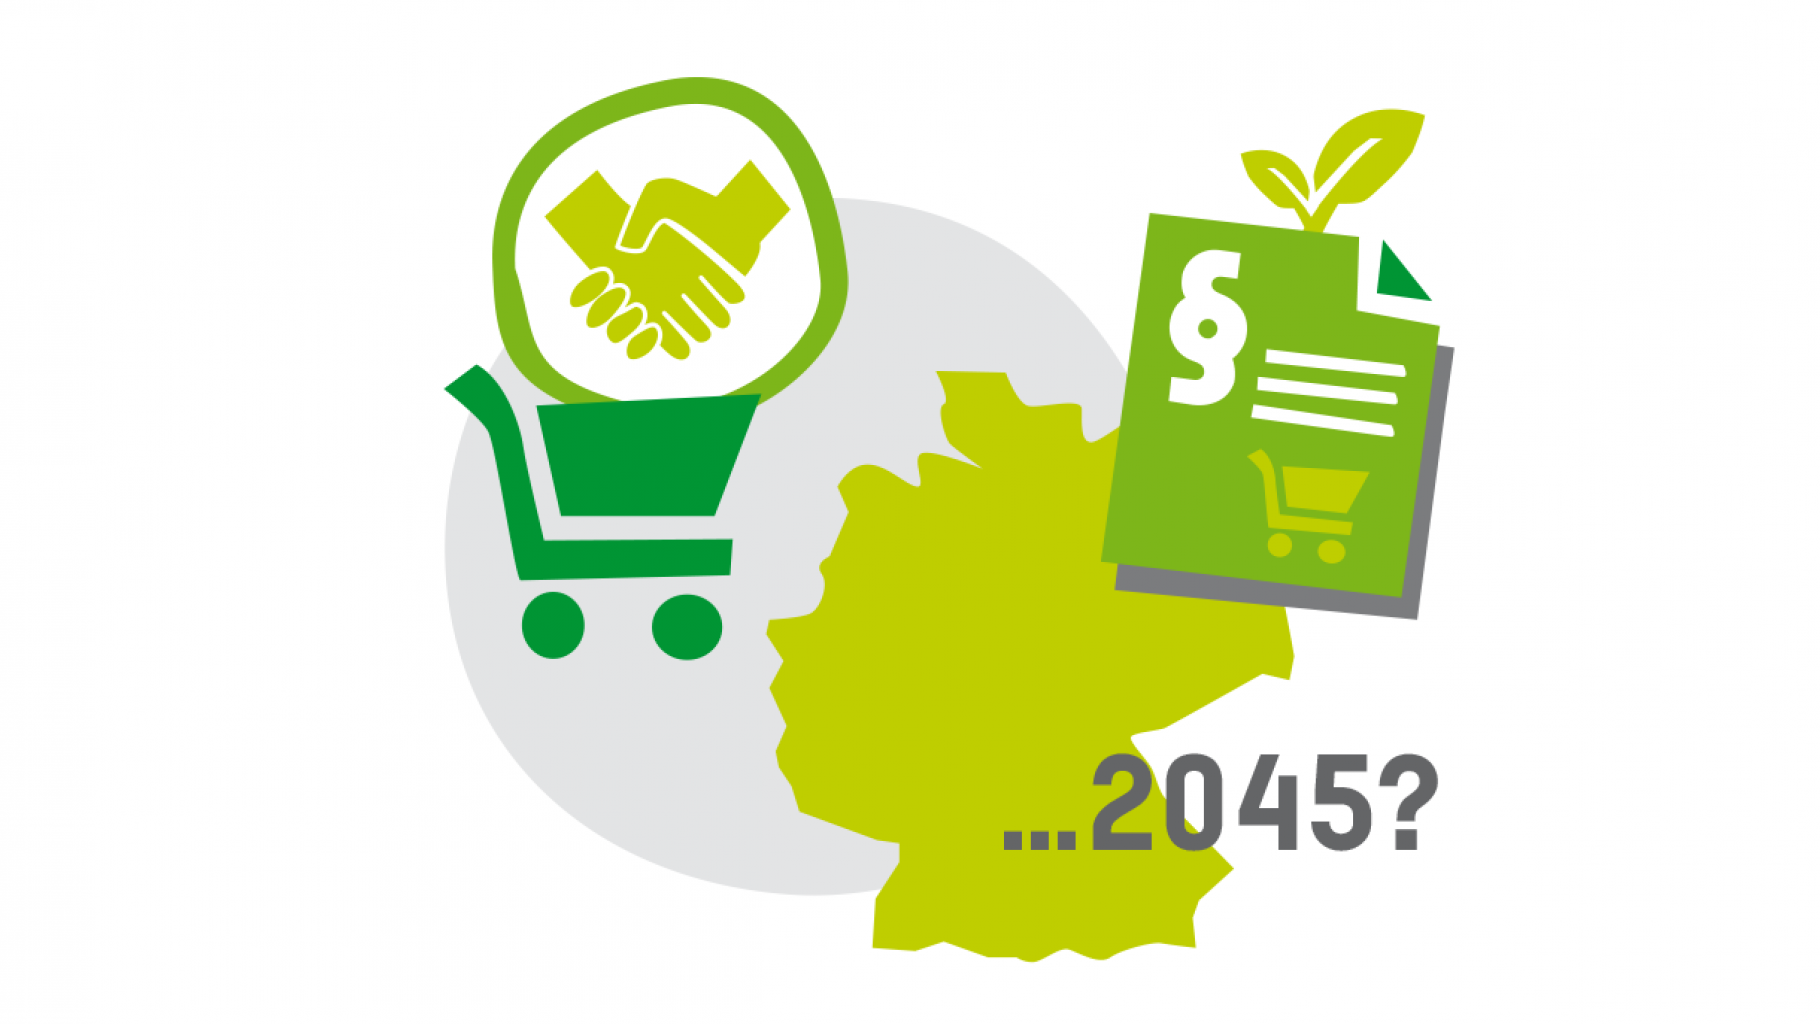 Grafik mit grünen Icons (Einkaufswagen, Vertrag, Umriss von Deutschland) und dem Datum 2045.